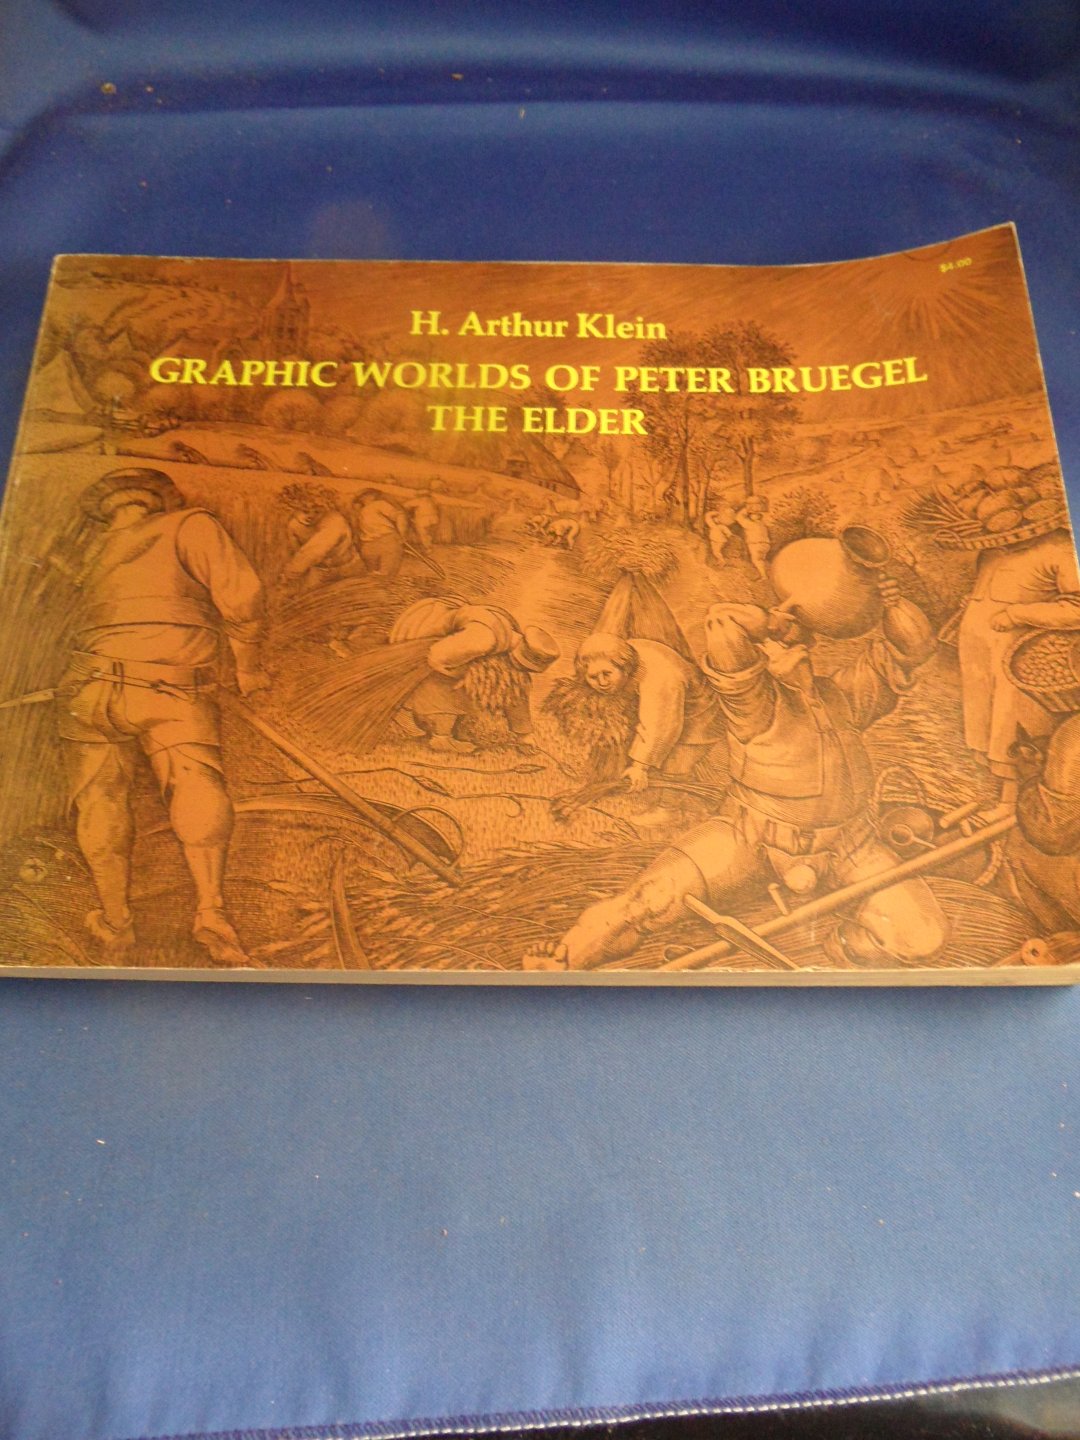 Klein, H. Arthur - Graphic works of Peter Bruegel the elder